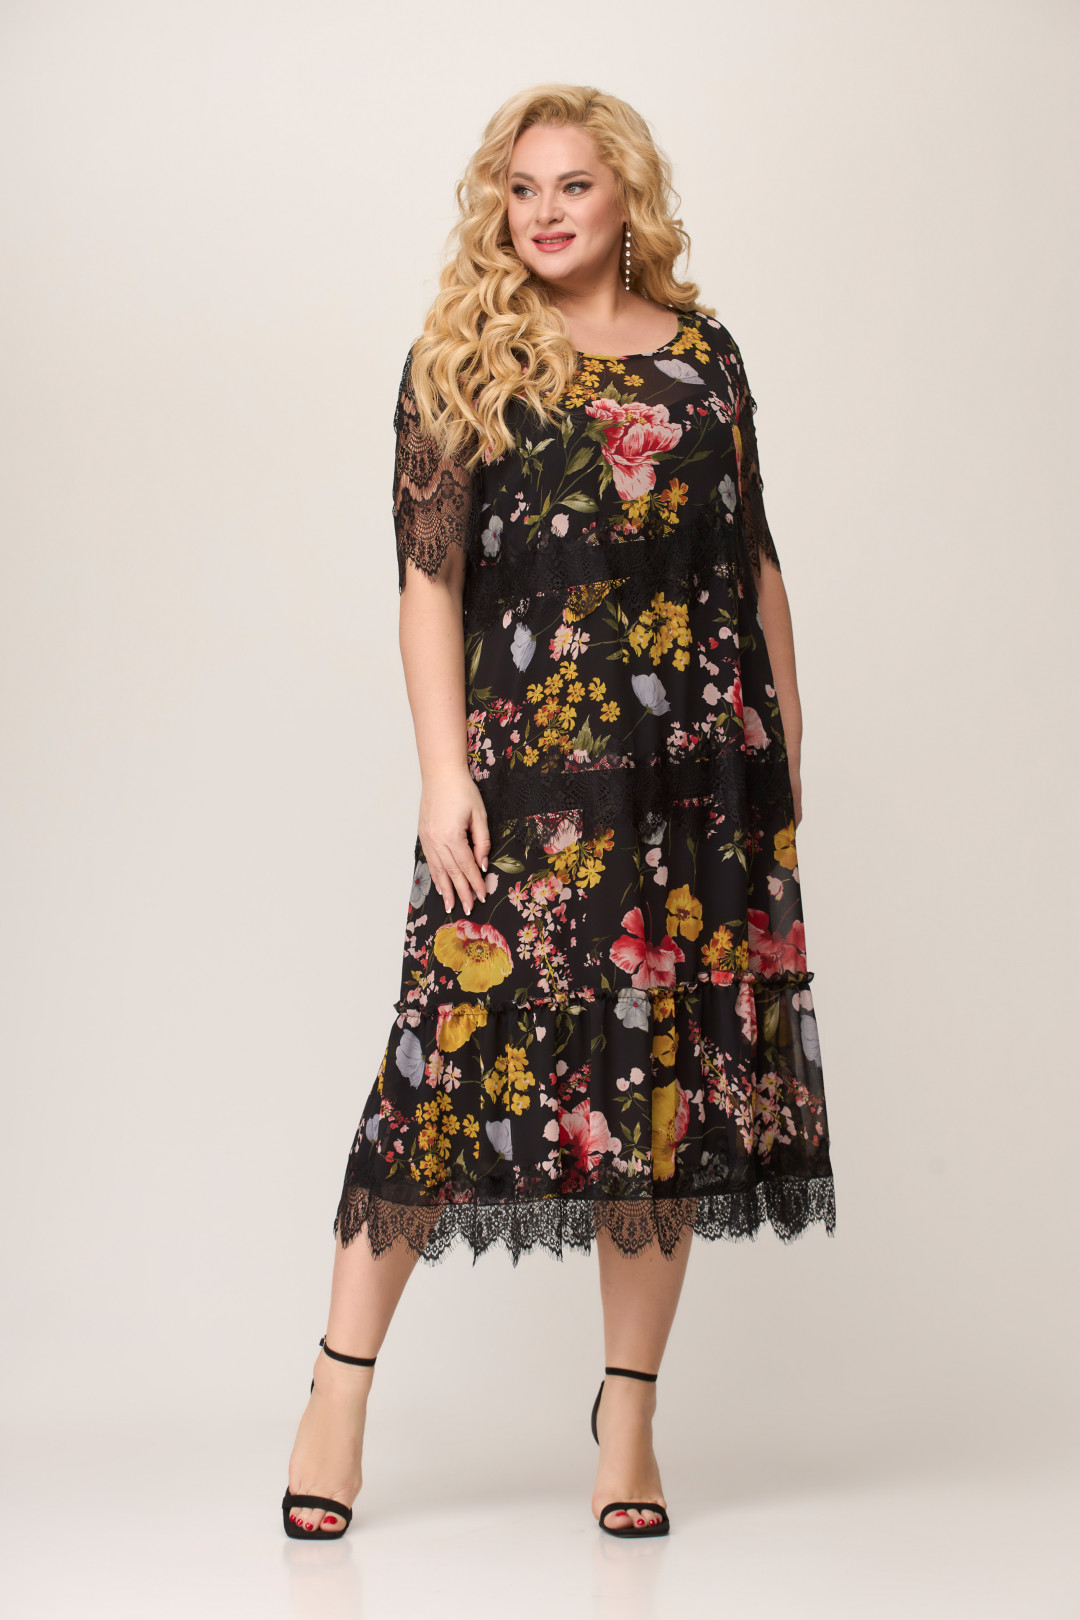 Платье Светлана-Стиль 1505 черный+цветы